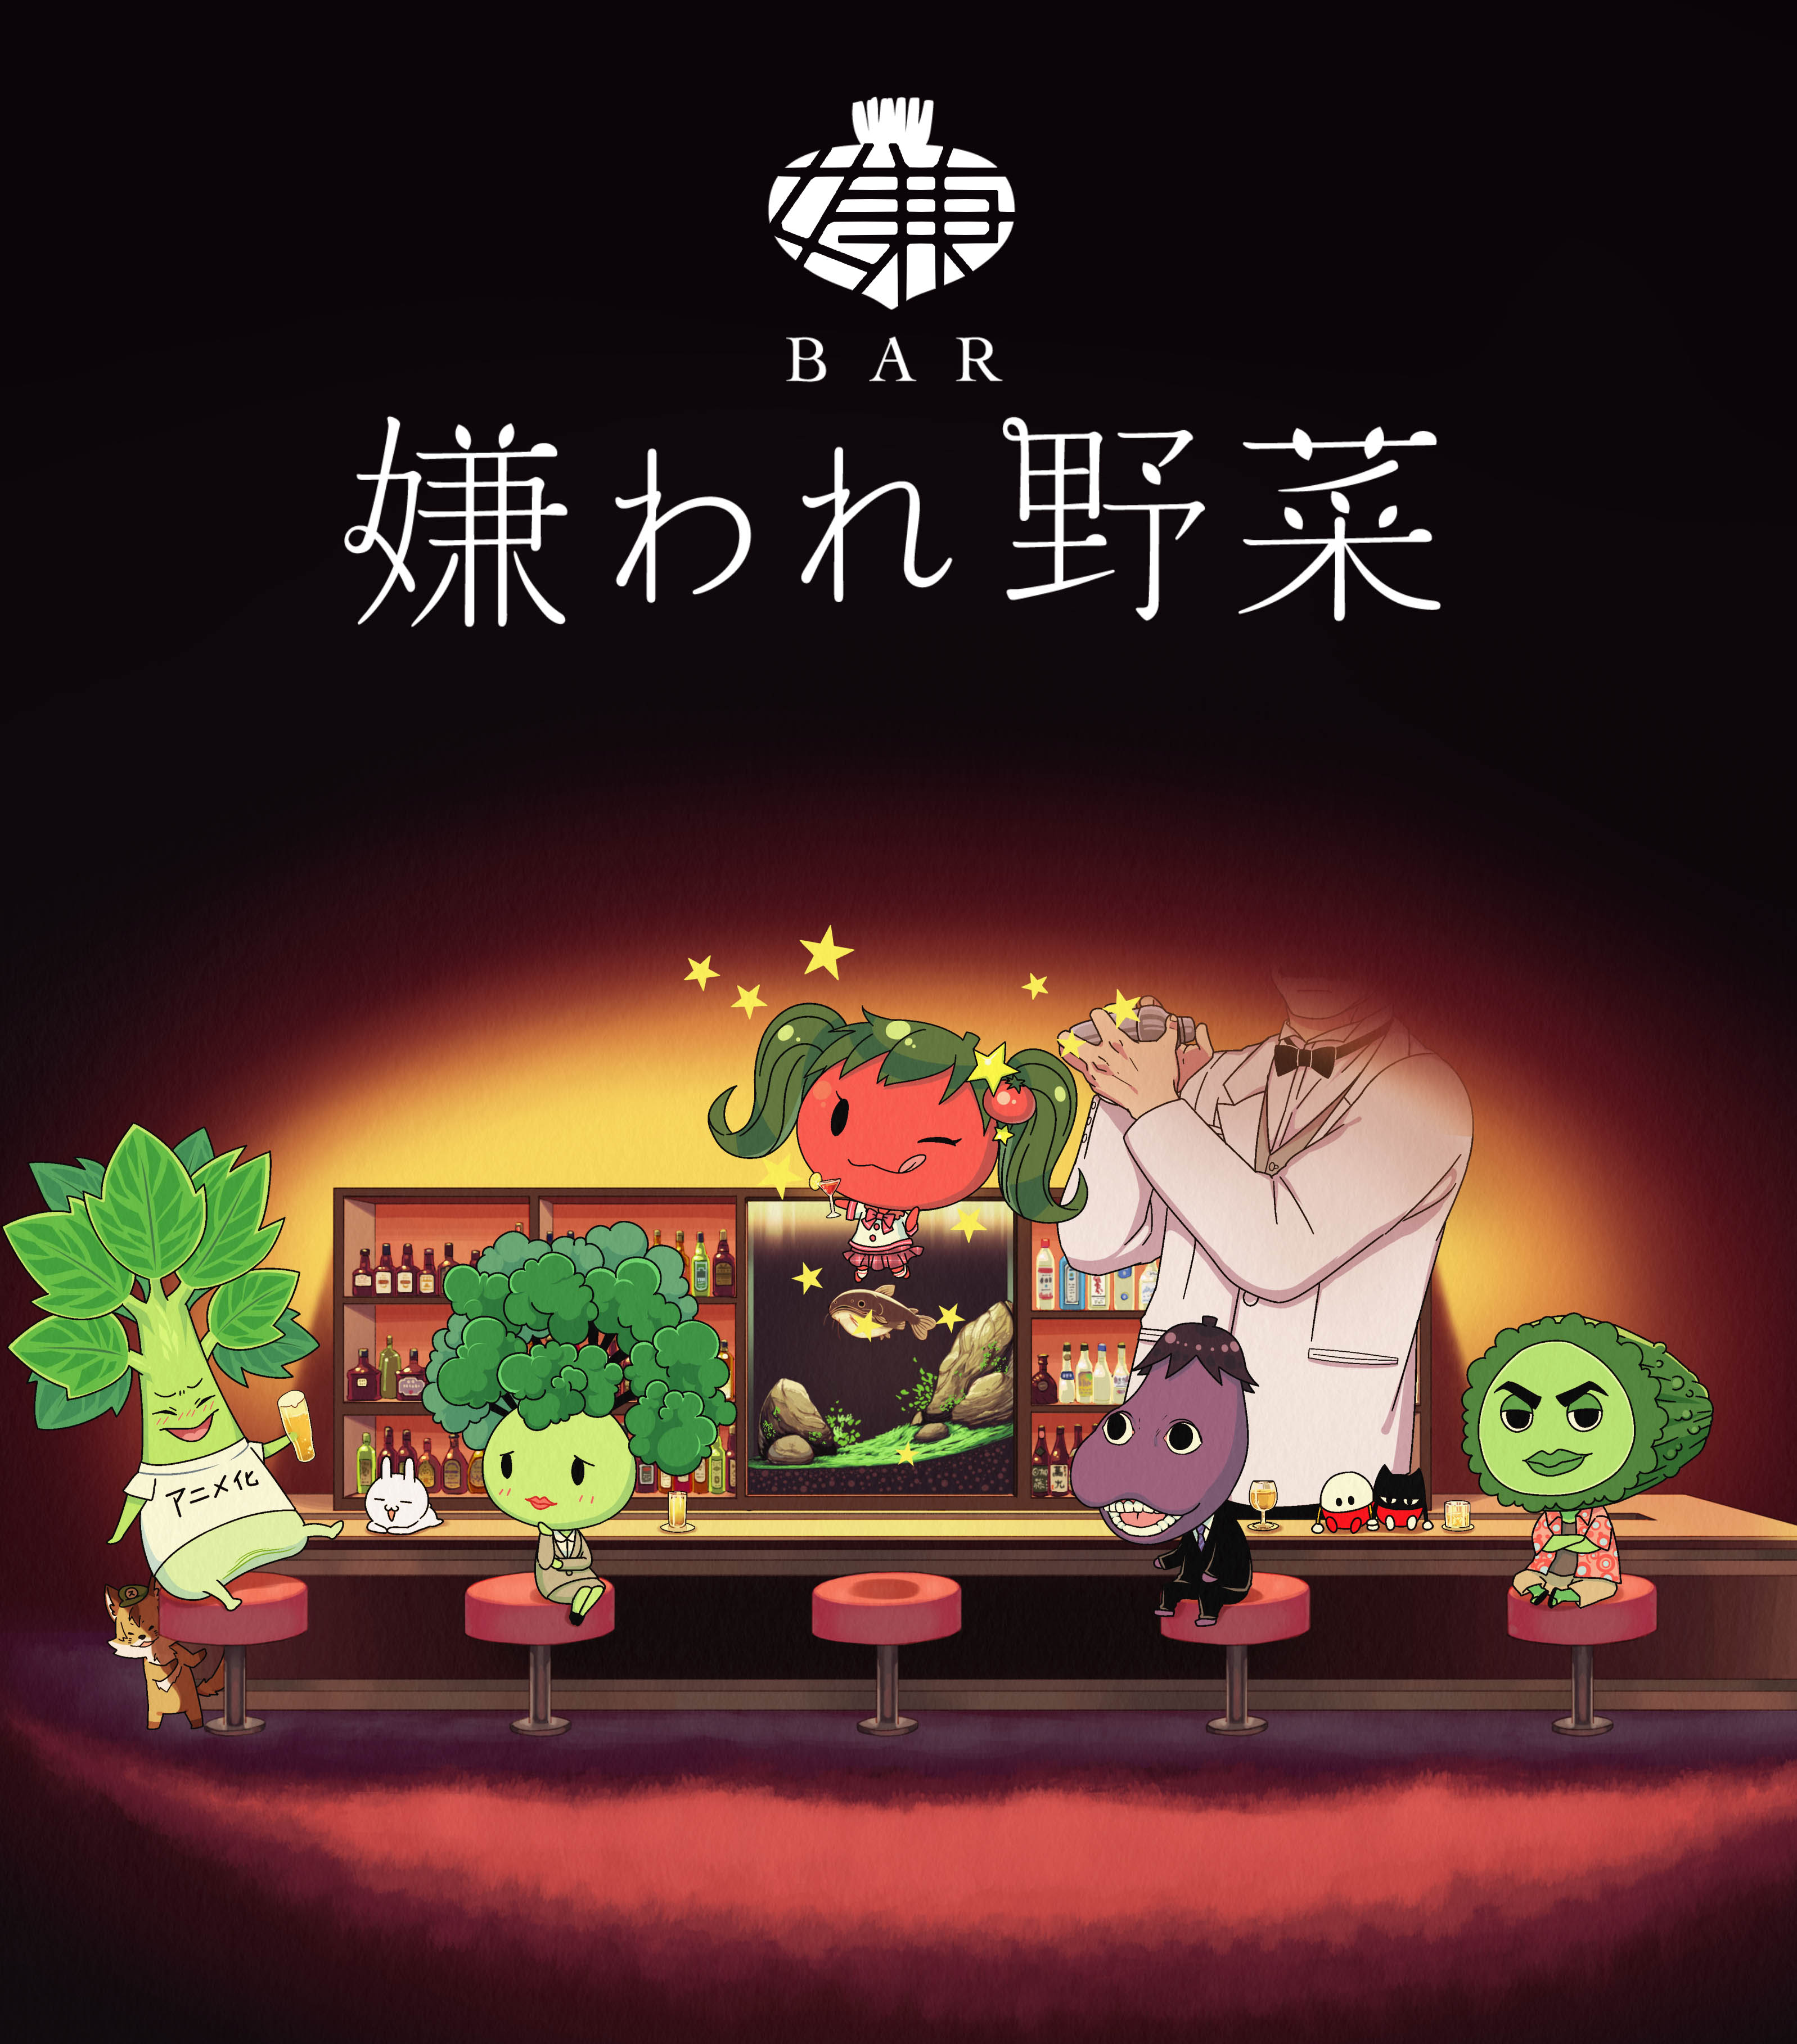 Kadokawa 静岡朝日テレビ 共同プロジェクトtvアニメ Bar 嫌われ野菜 ４月スタート 株式会社kadokawaのプレスリリース